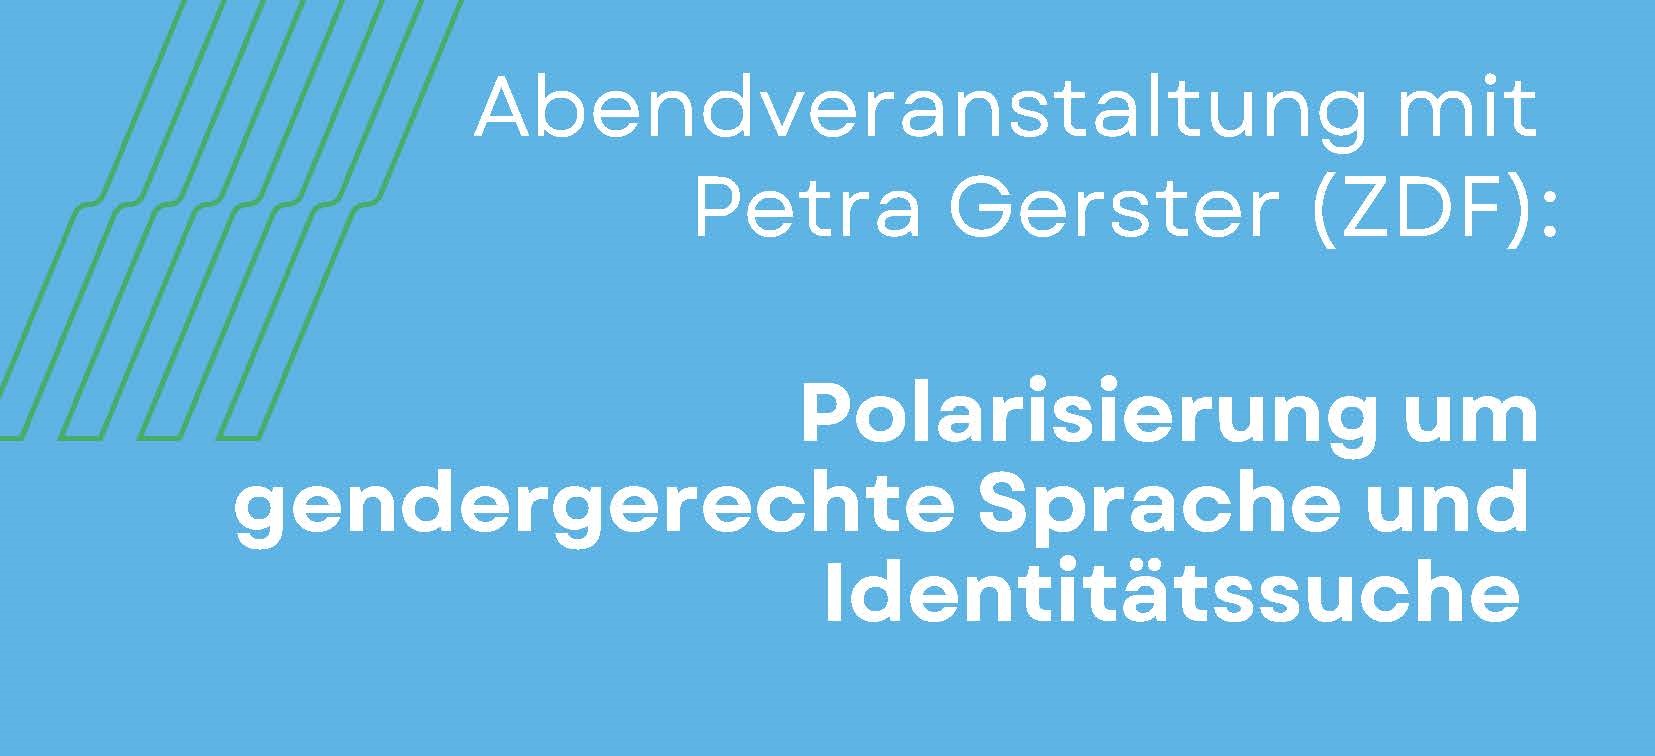 Abendveranstaltung mit Petra Gerster (ZDF): Polarisierung um gendergerechte Sprache und Identitätssuche